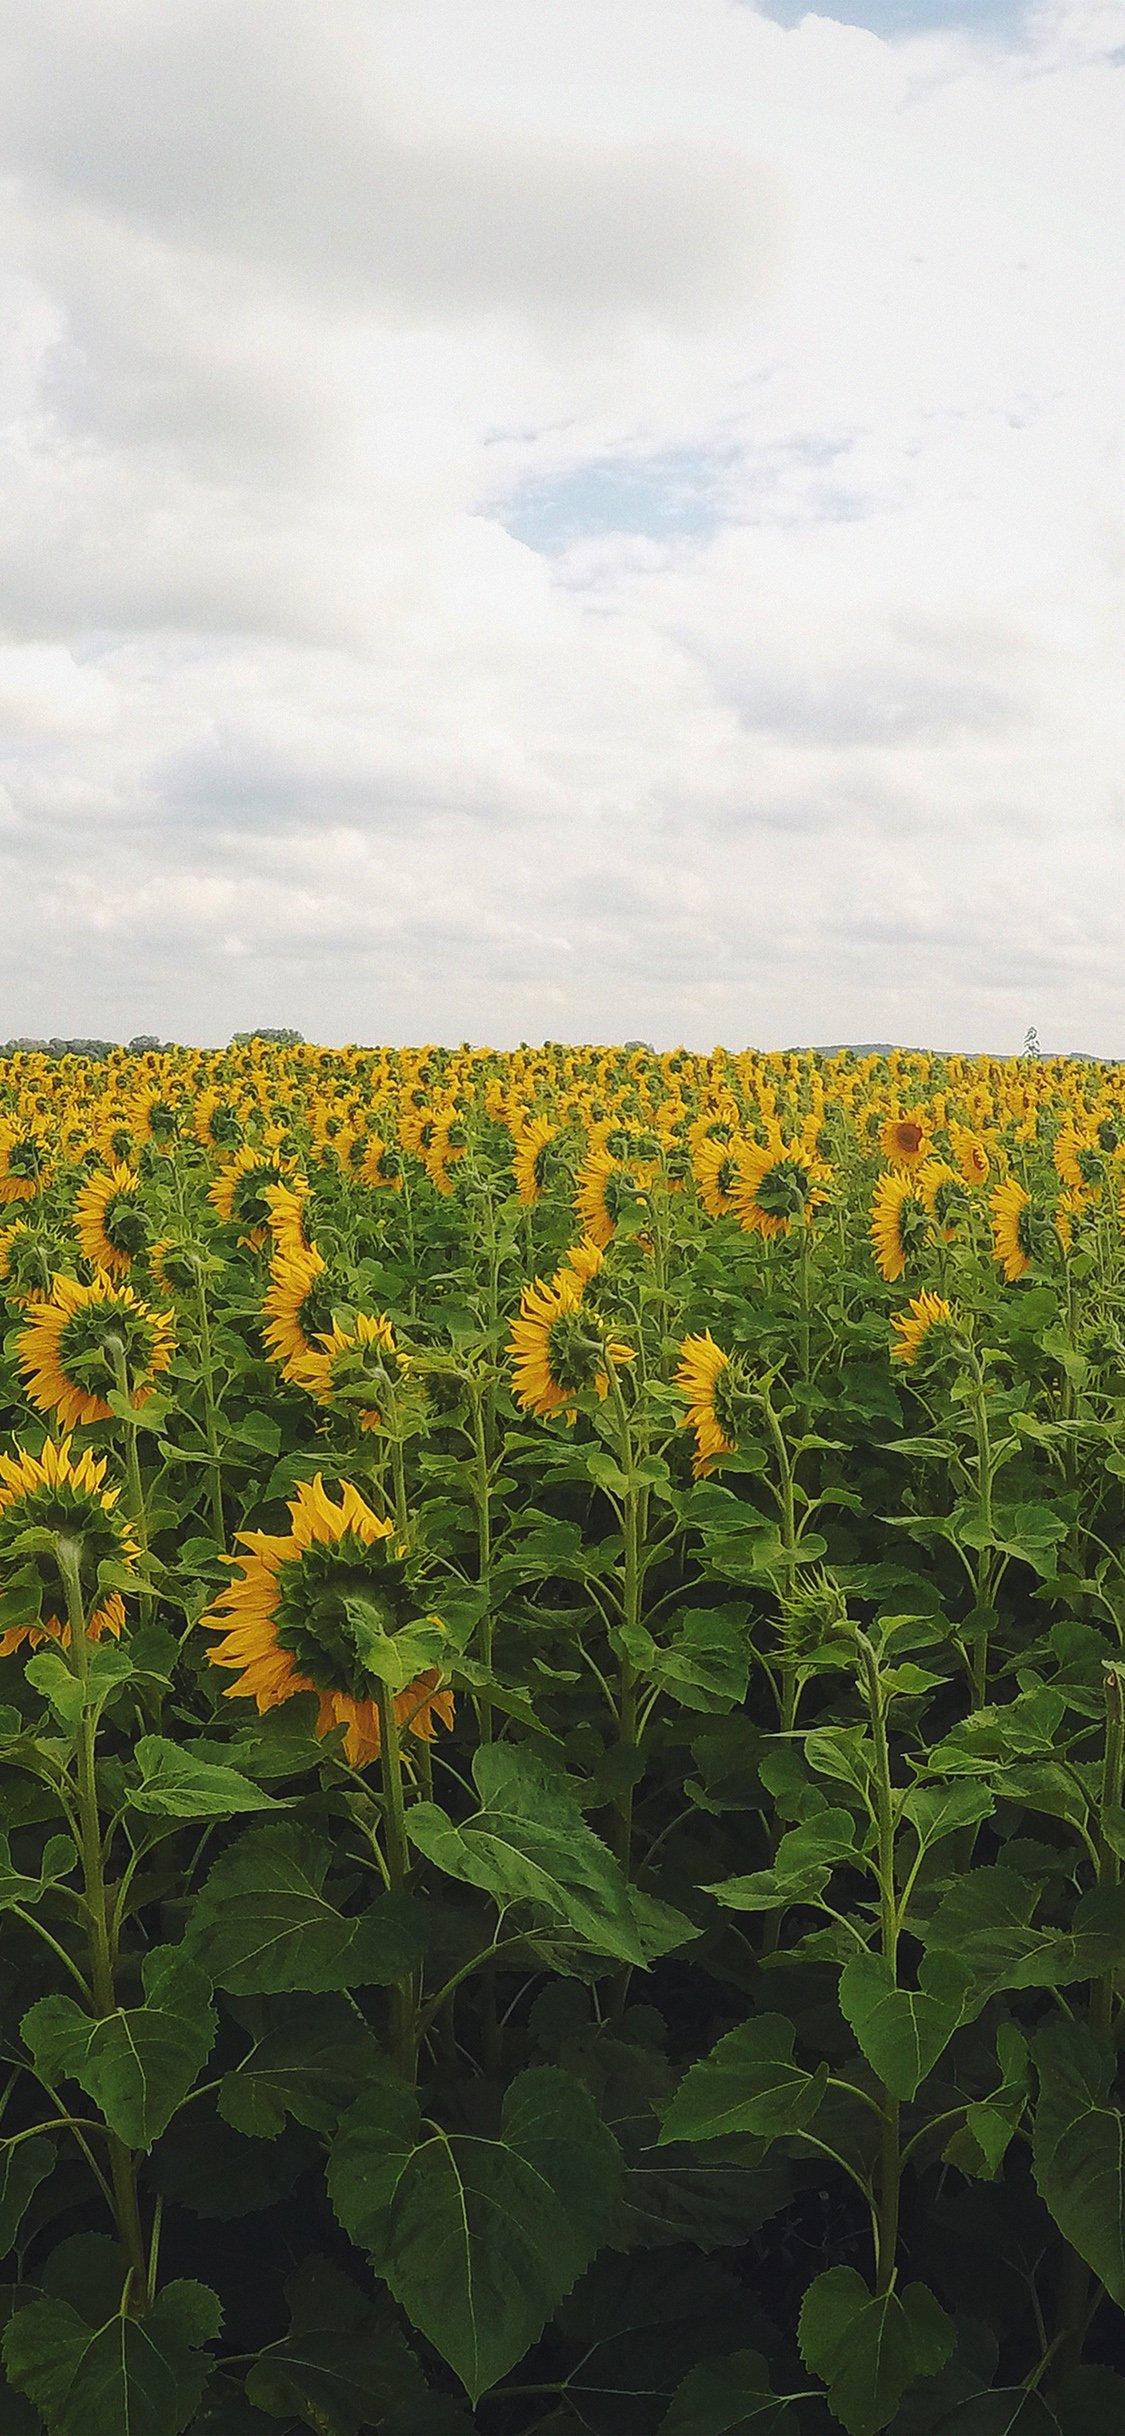 iPhone X wallpaper. sunflower field nature